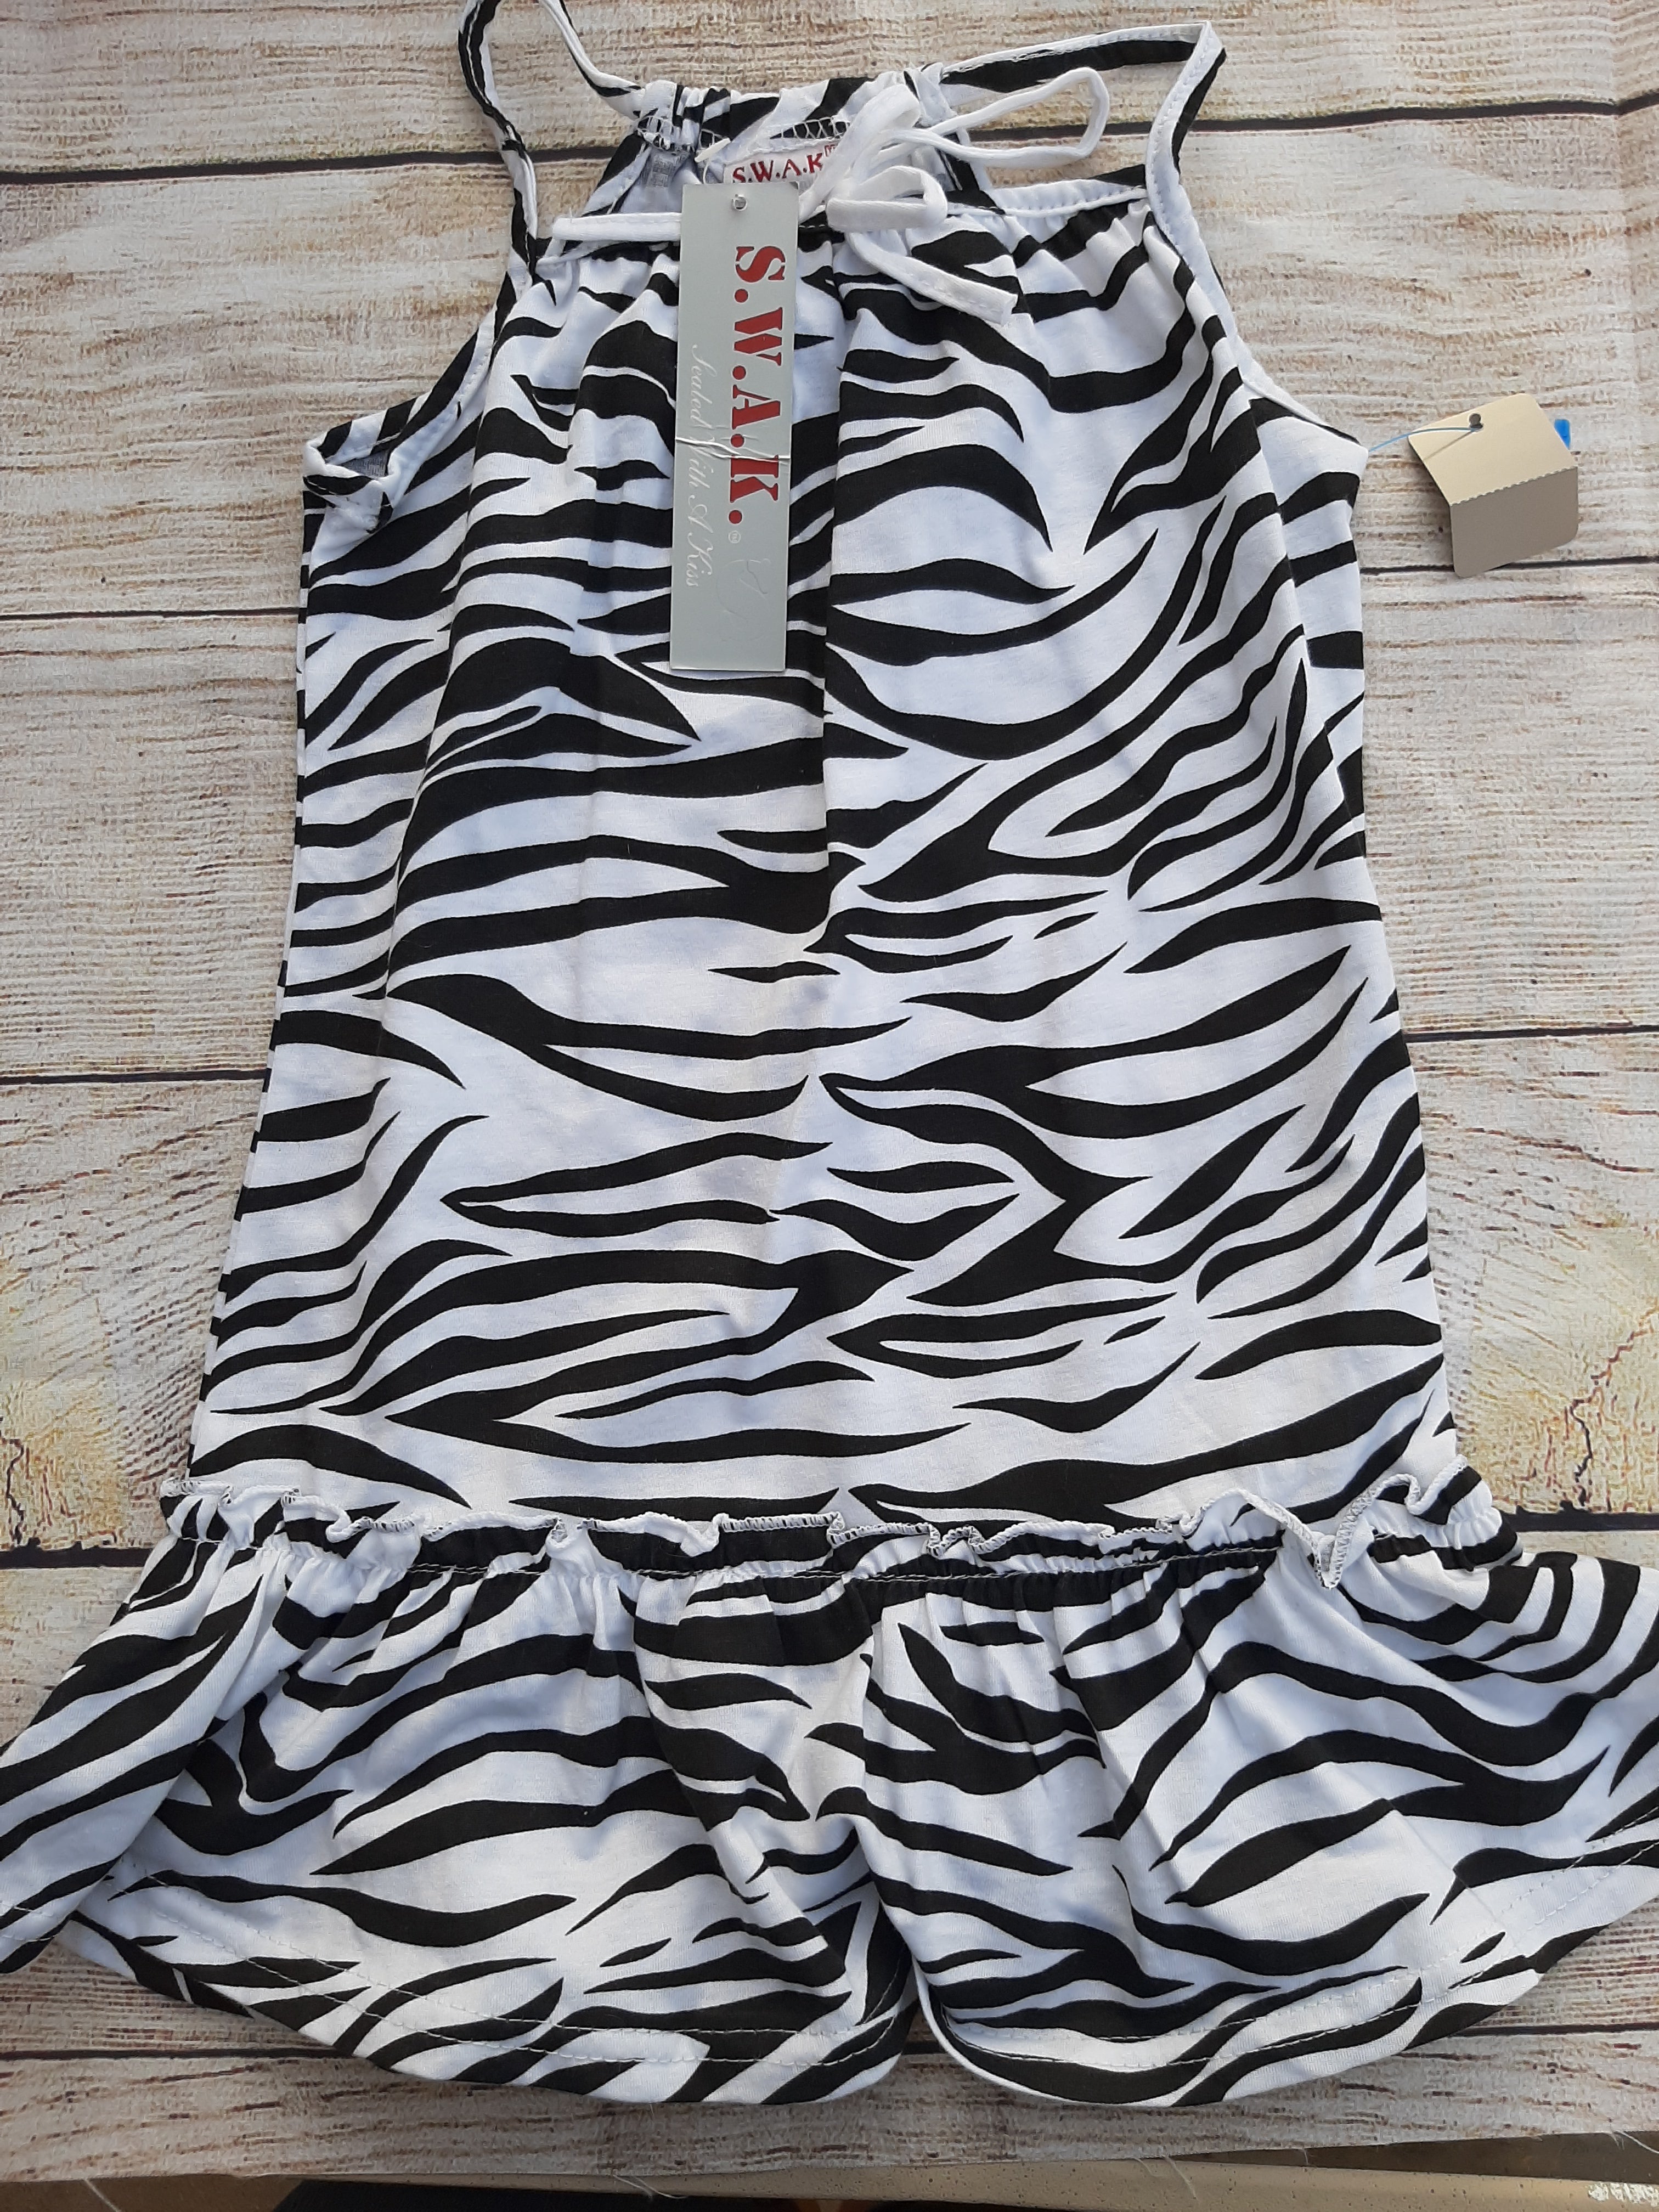 NEW S.W A.K Summer Zebra Sundress sz 5